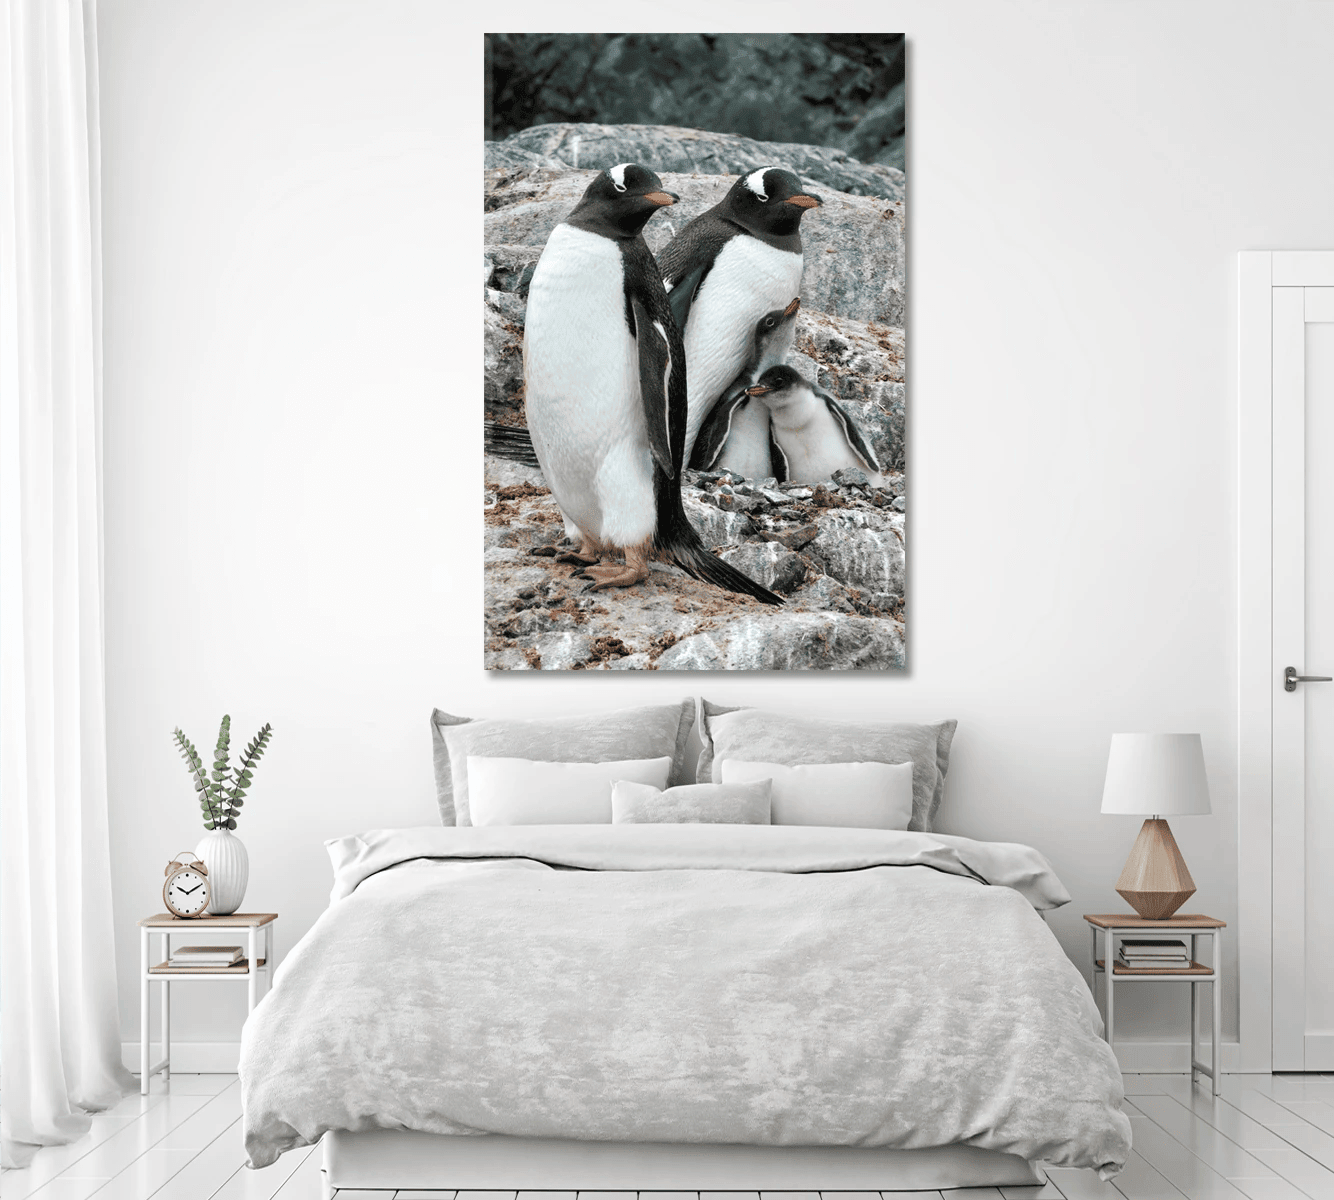 Gentoo Penguin Family Canvas Wall Art Decor